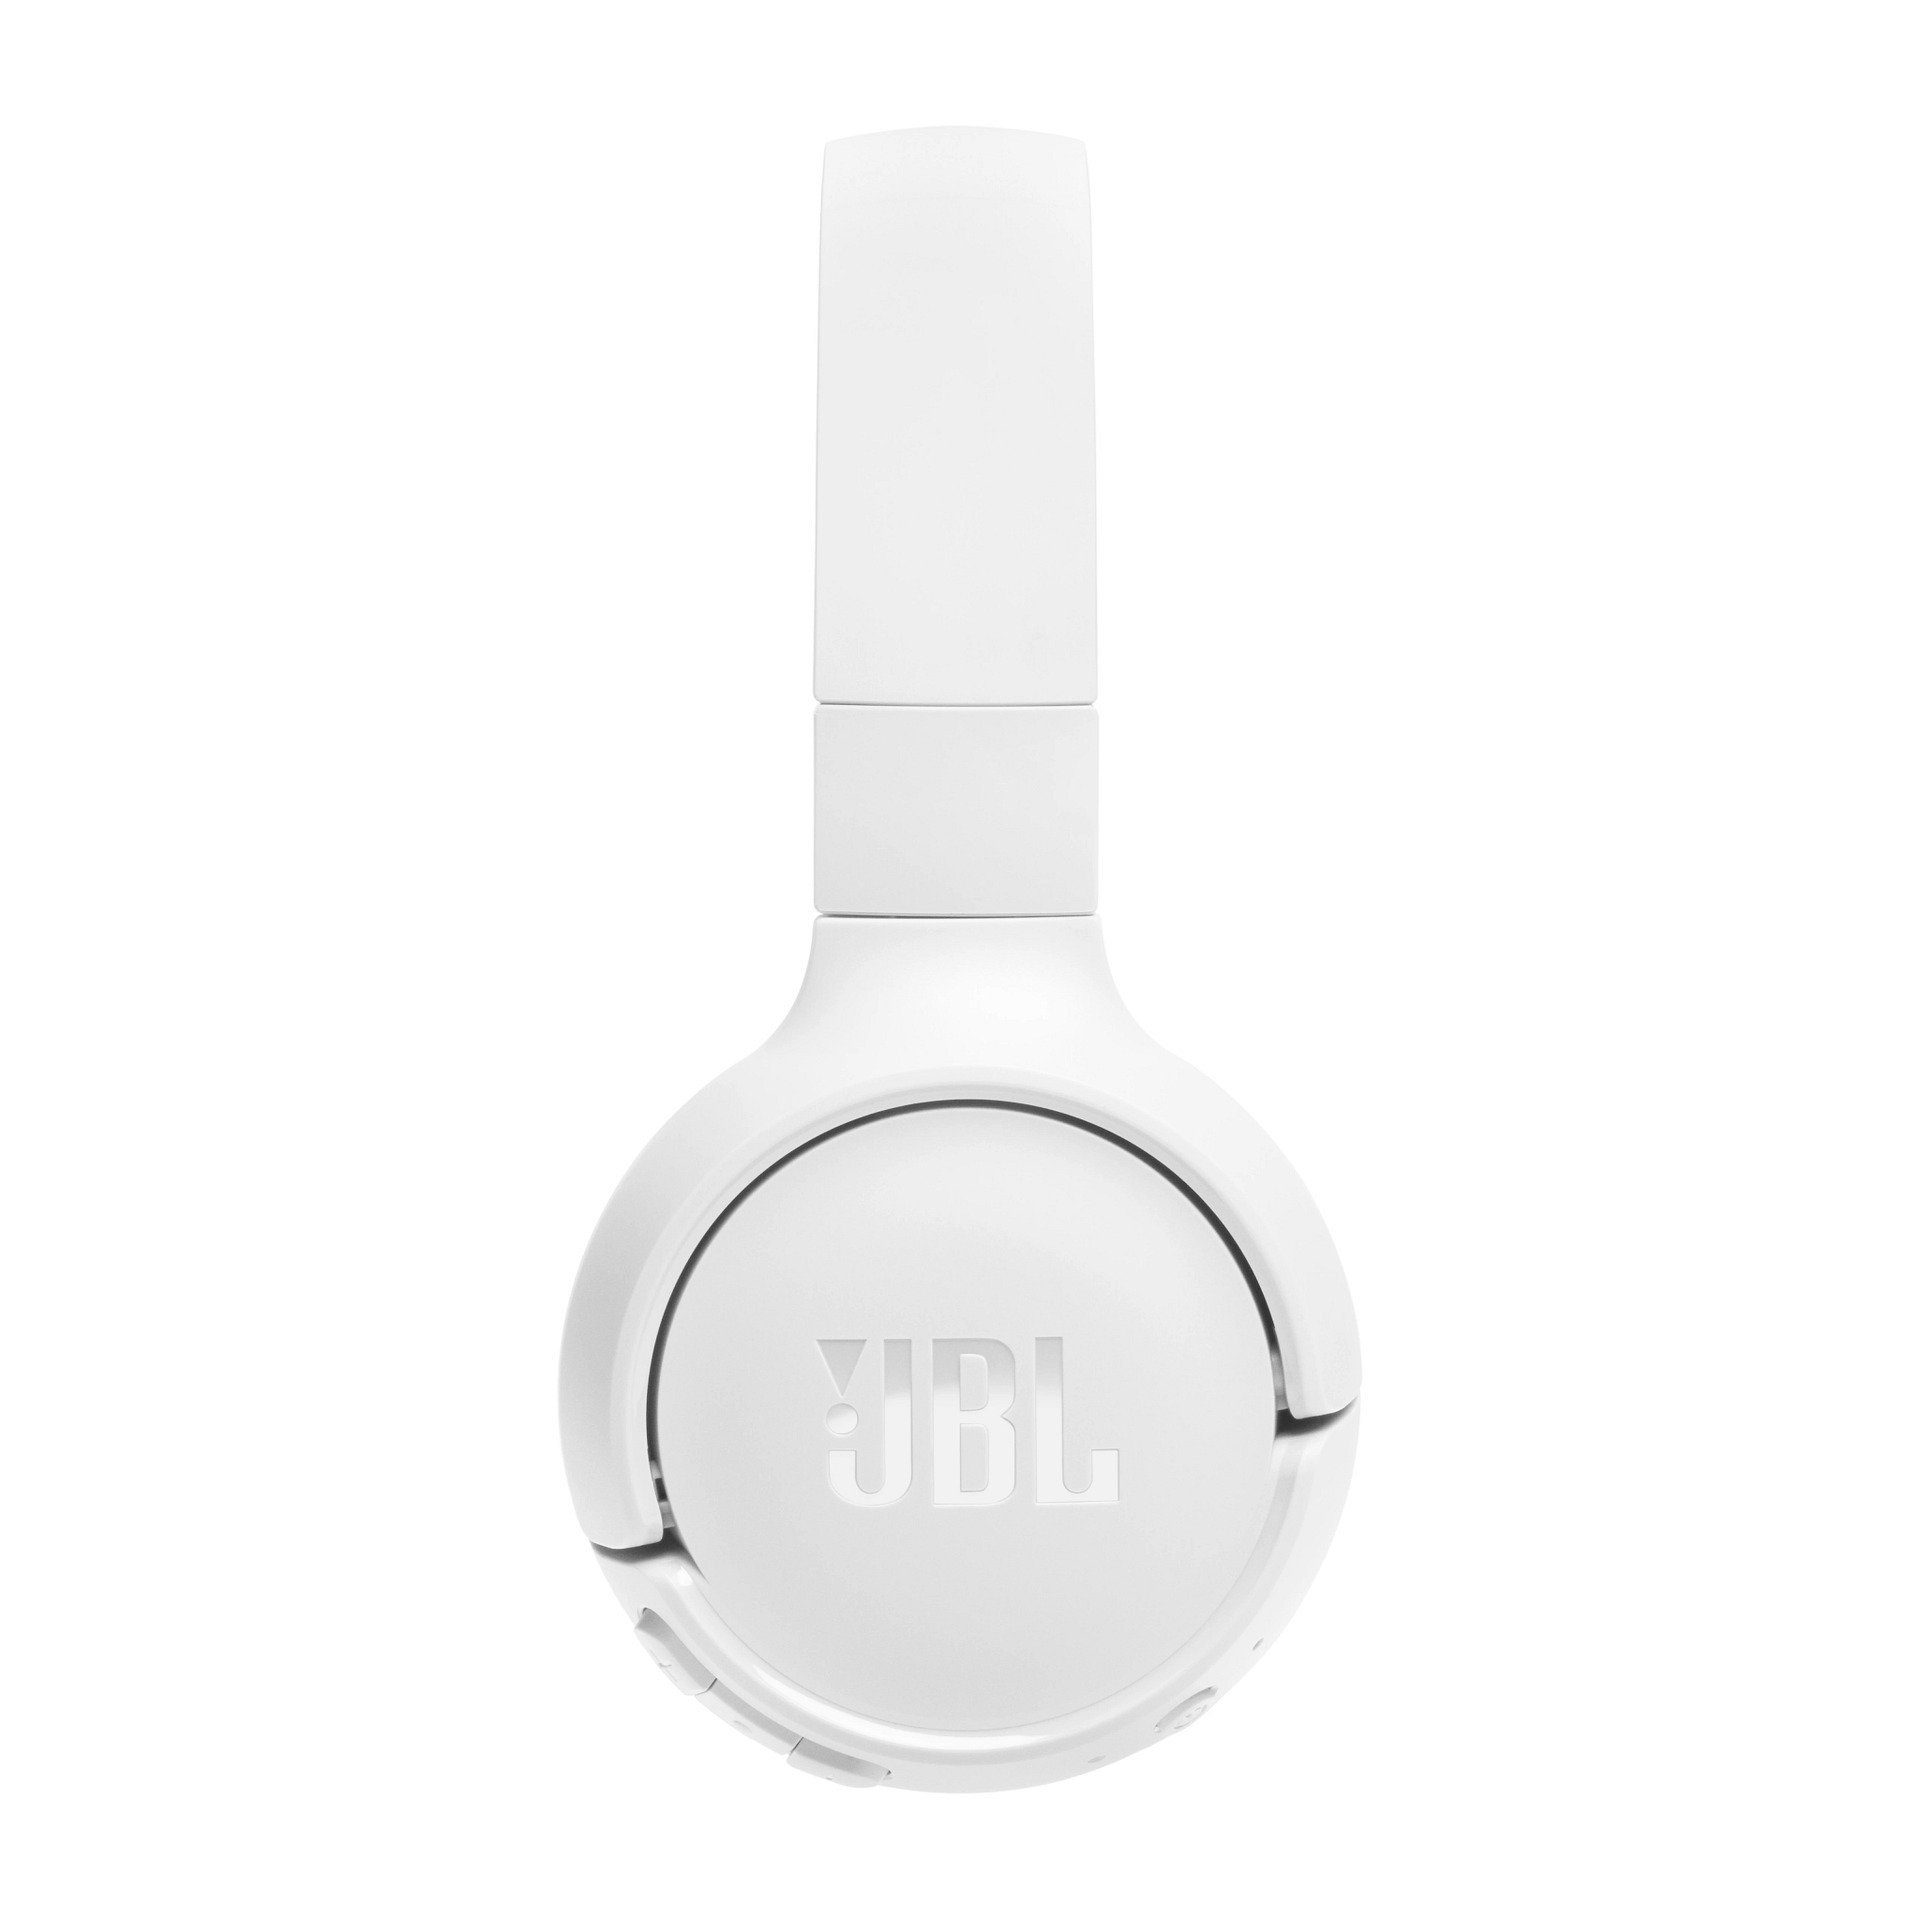 Tune BT JBL Weiß 520 Over-Ear-Kopfhörer